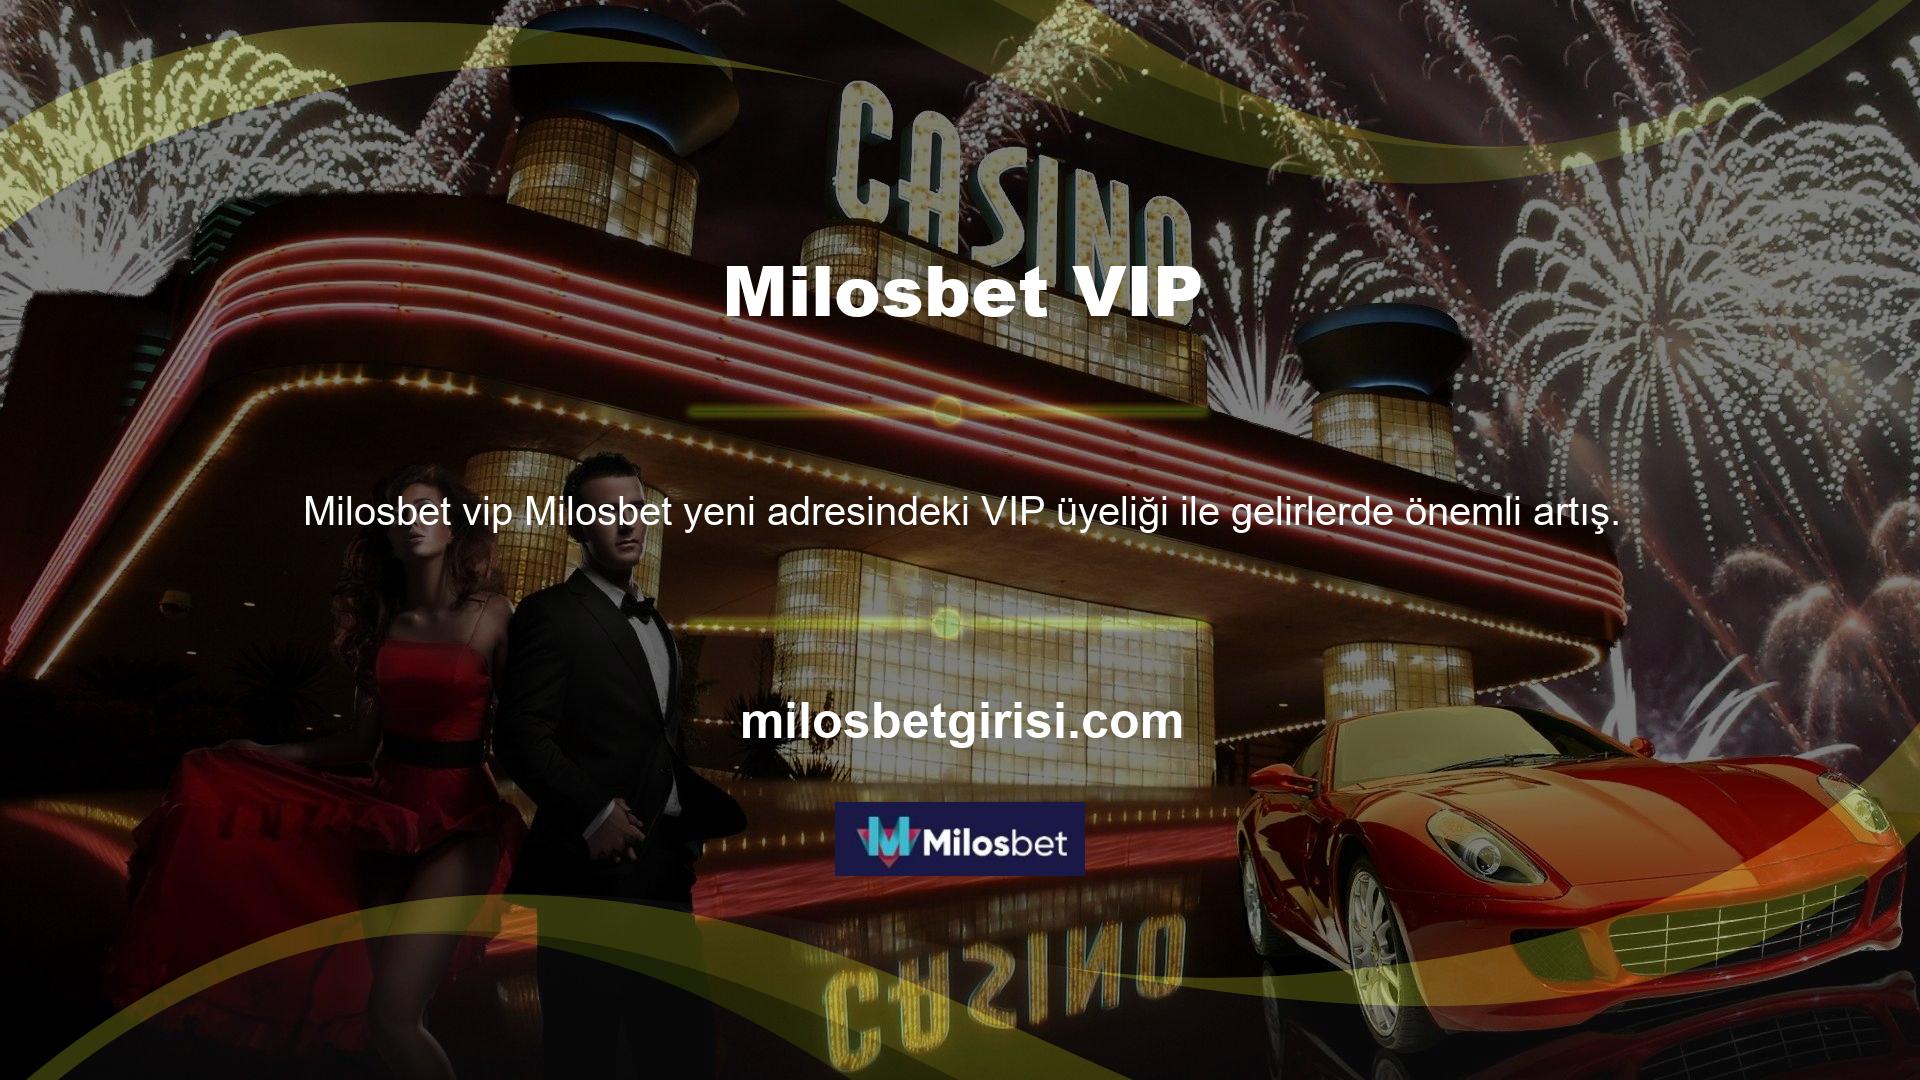 Ayrıca Milosbet bahis sitesi VIP üyelerine özel bir müşteri temsilcisi sunmaktadır